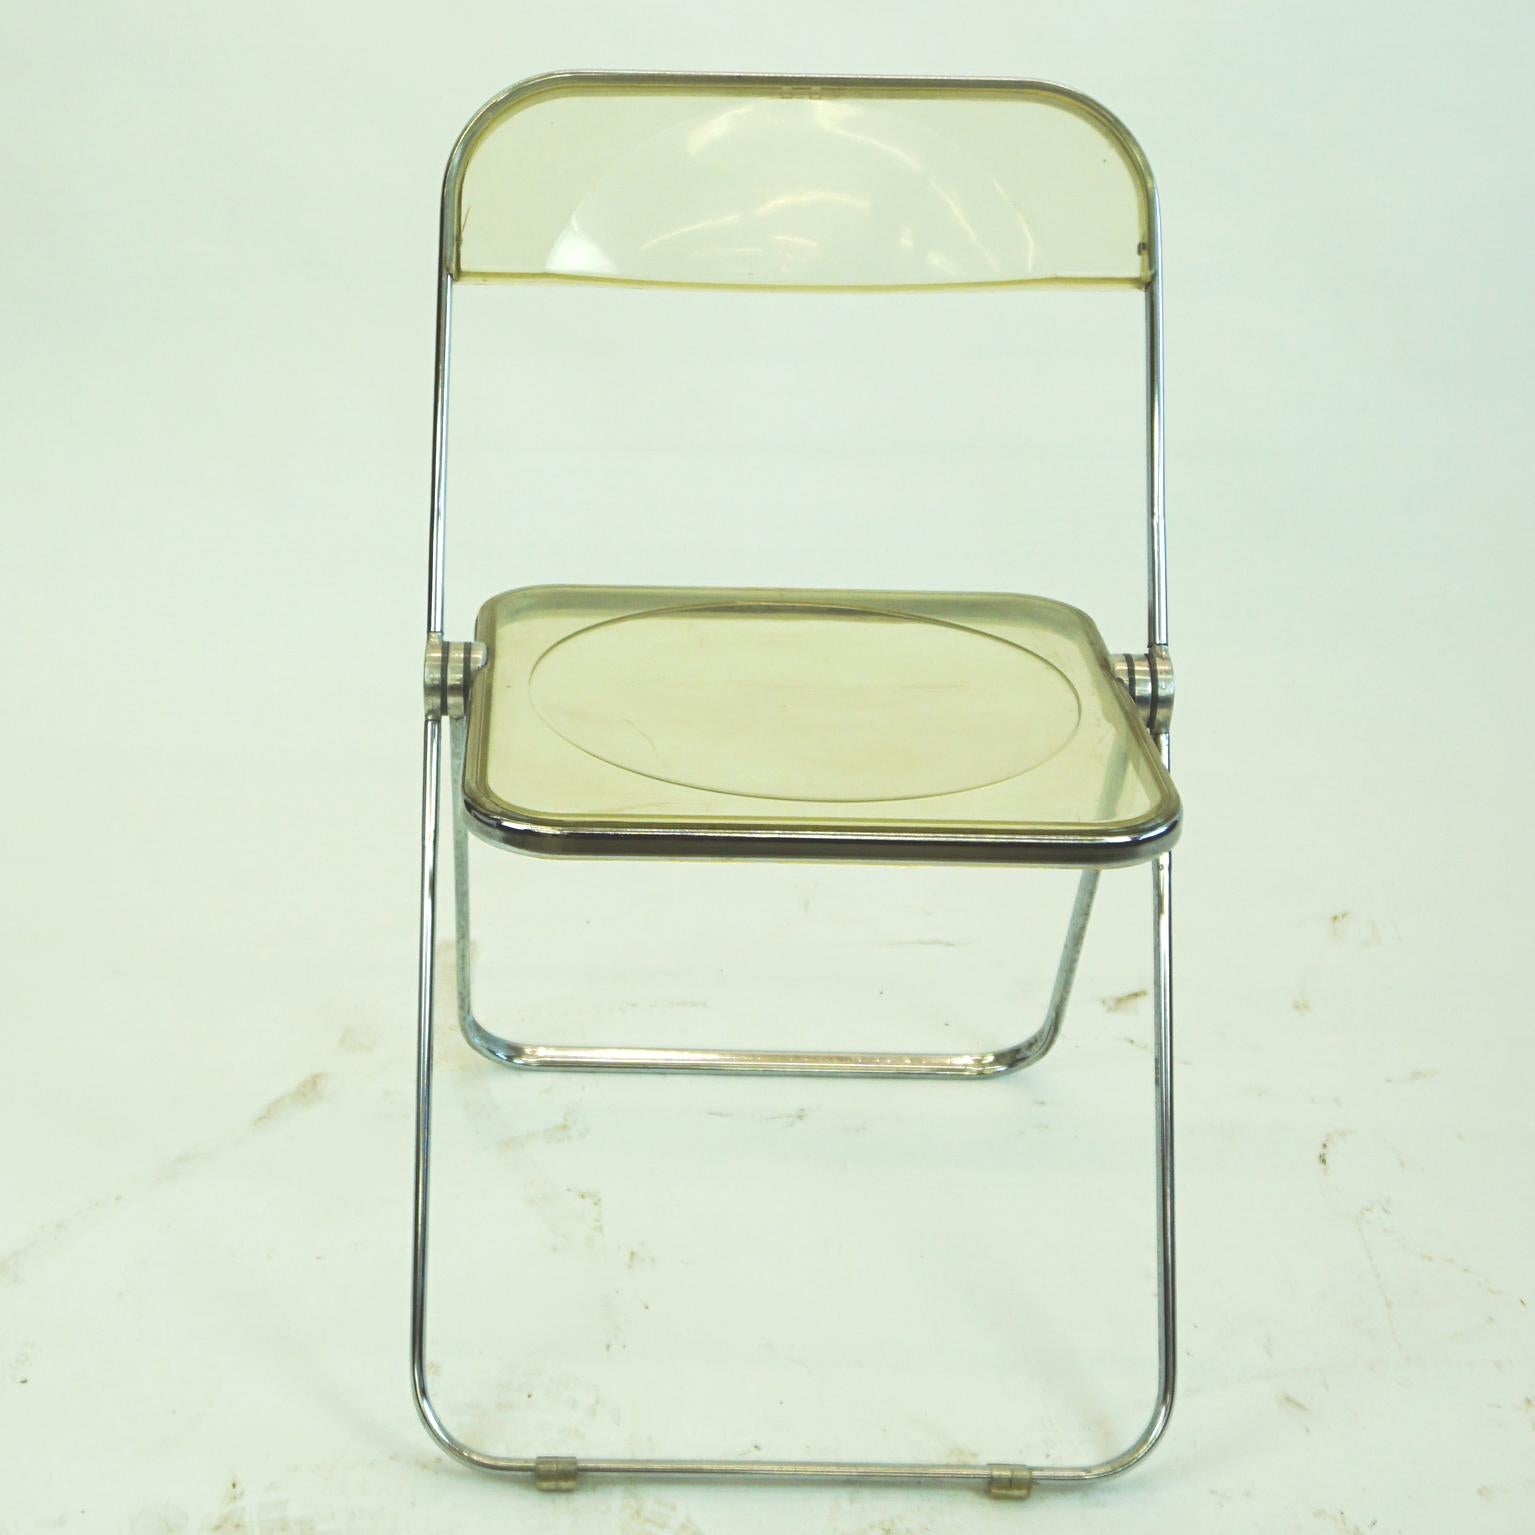 ikonischer italienischer Mid-Century Modern Klappstuhl aus Lucite und Chrom, entworfen von Giancarlo Piretti 1967 für Anonima Castelli, Italien. Der Plia-Klappstuhl ist ein echter Design-Klassiker, denn er hat mehrere Preise gewonnen und ist auch